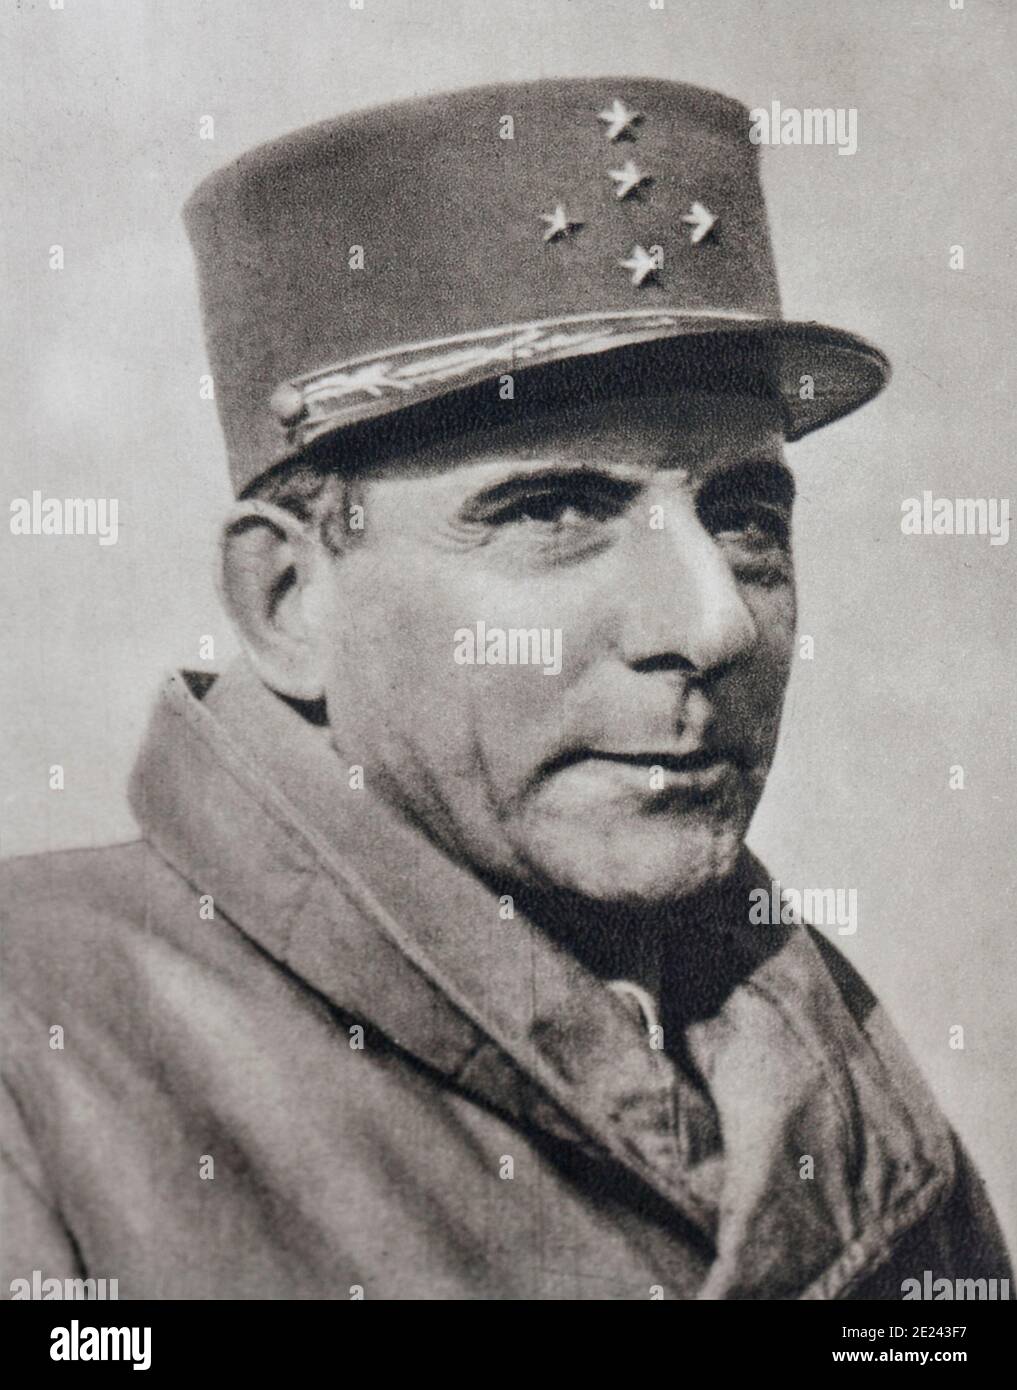 Jean de Lattre de Tassigny, (1889 - 1952). Commandant de la première armée française qui débarqua en Provence. Banque D'Images